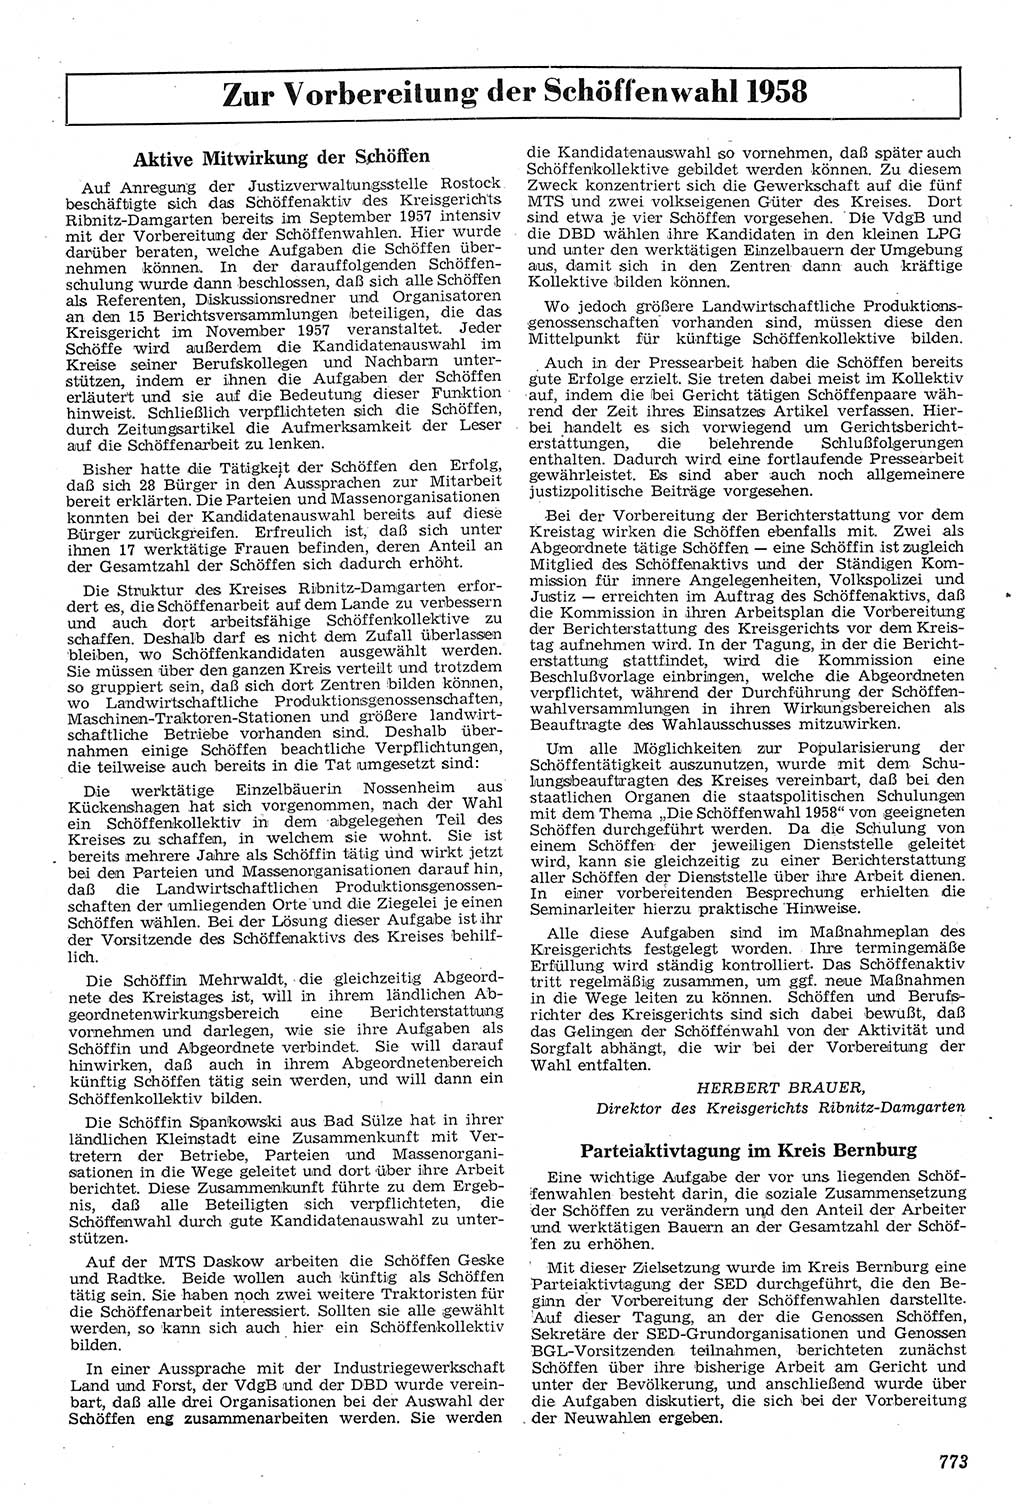 Neue Justiz (NJ), Zeitschrift für Recht und Rechtswissenschaft [Deutsche Demokratische Republik (DDR)], 11. Jahrgang 1957, Seite 773 (NJ DDR 1957, S. 773)